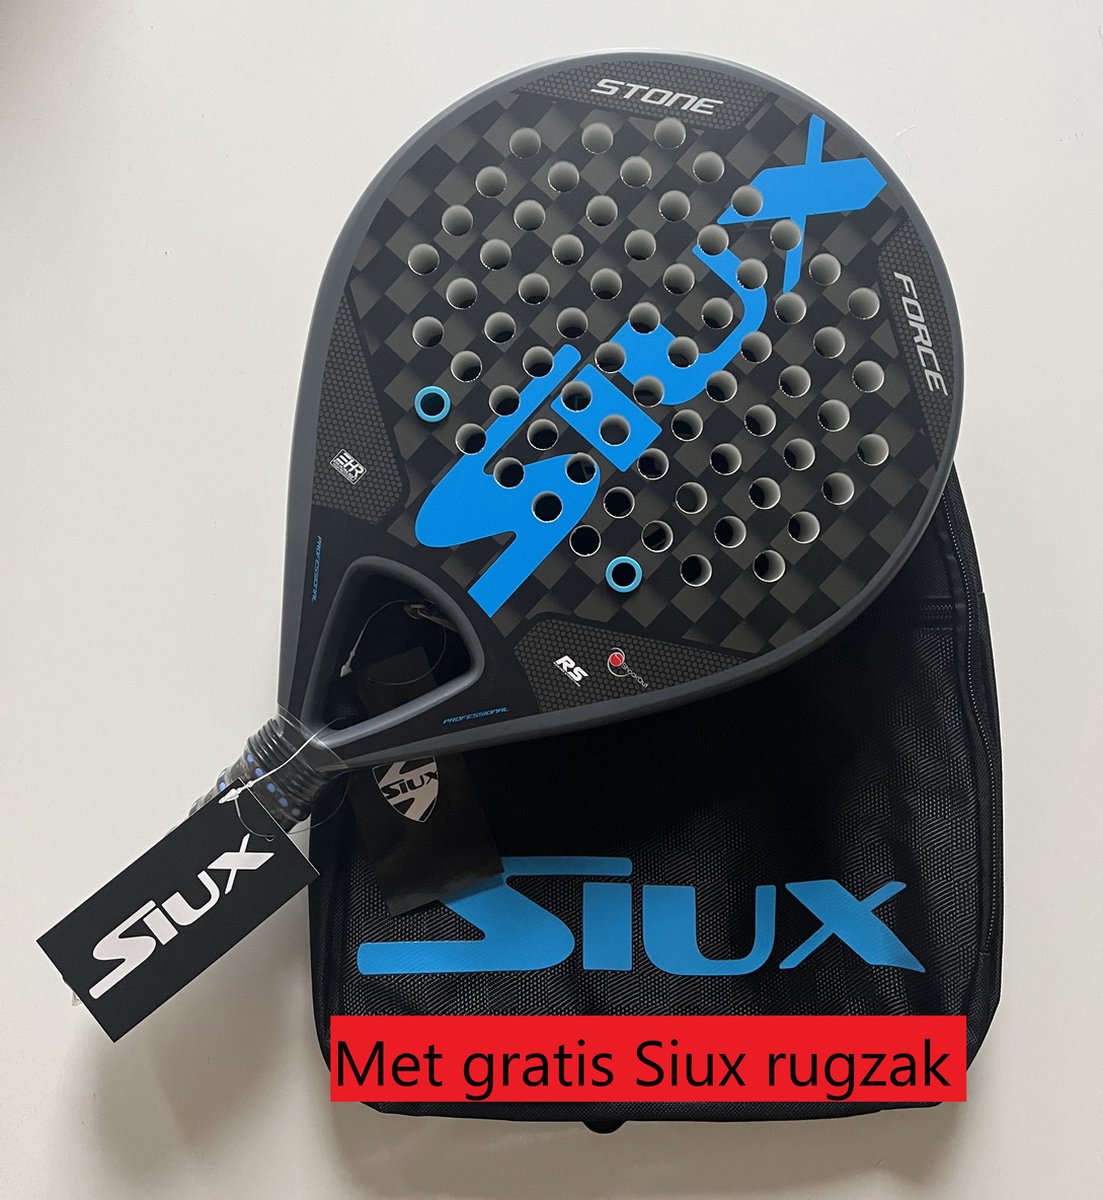 Siux Stone Force Padel racket met gratis Siux rugzak